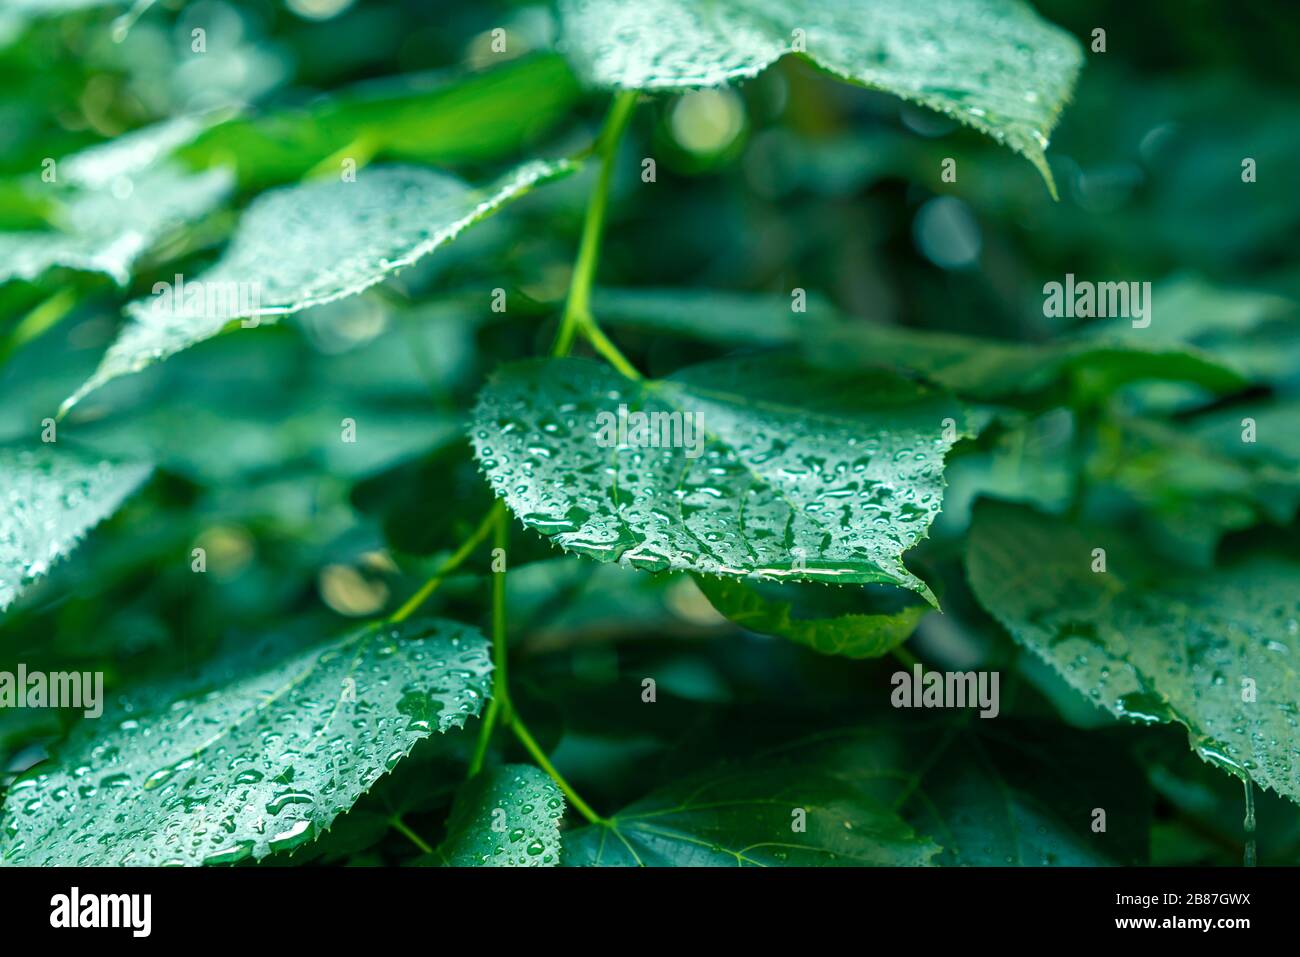 Cierre de hojas verdes mojadas después de una lluvia de verano. Concepto de pureza, calma y relajación. Foto de stock